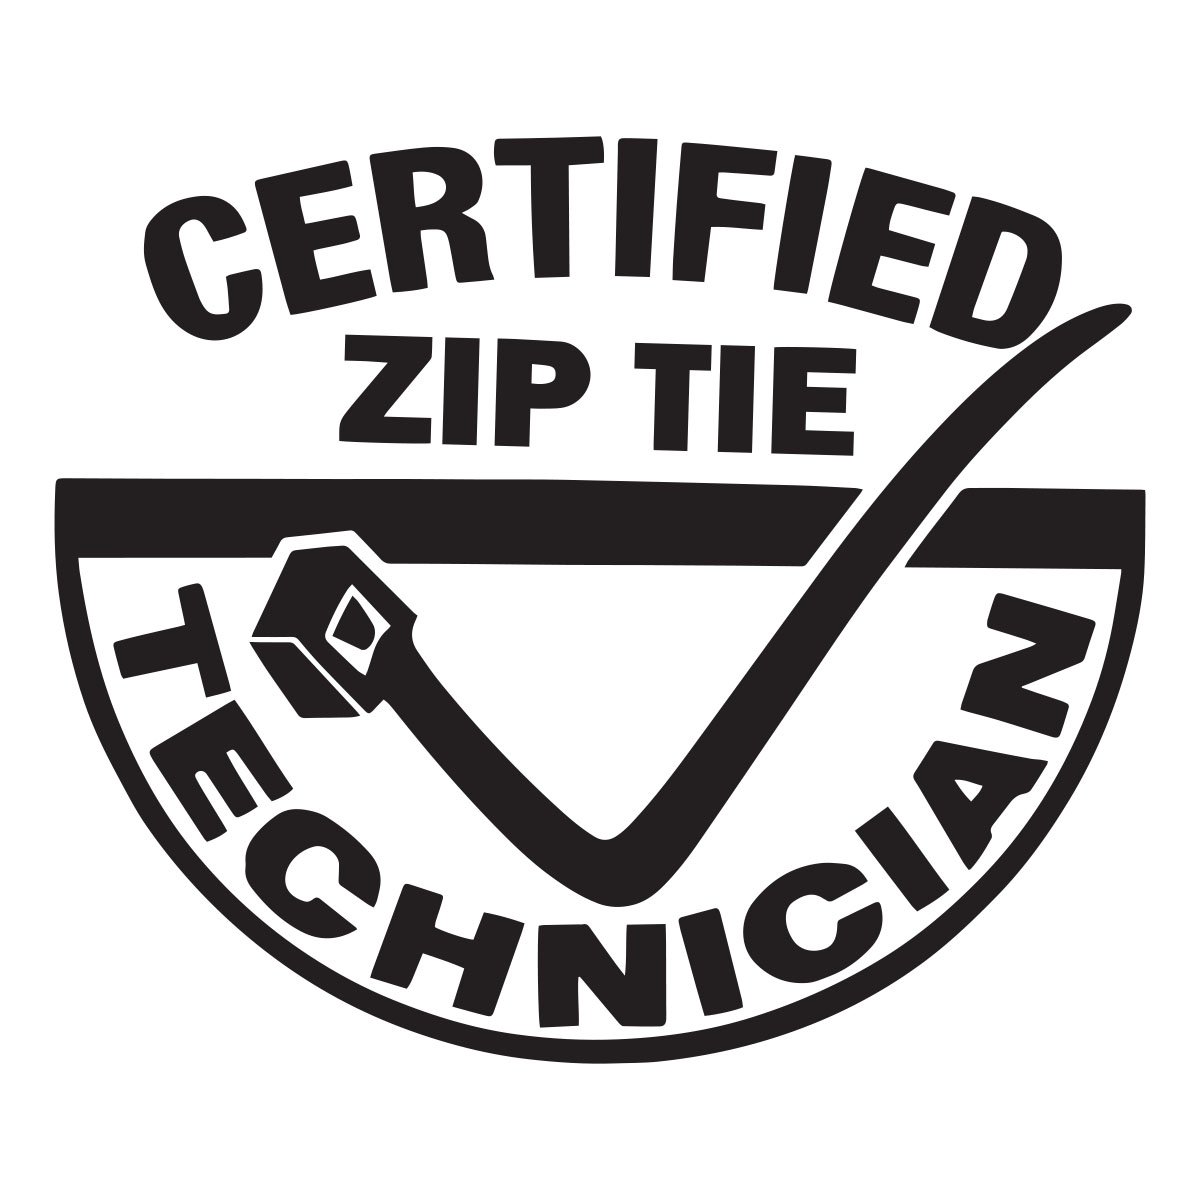 certified zip tie technician